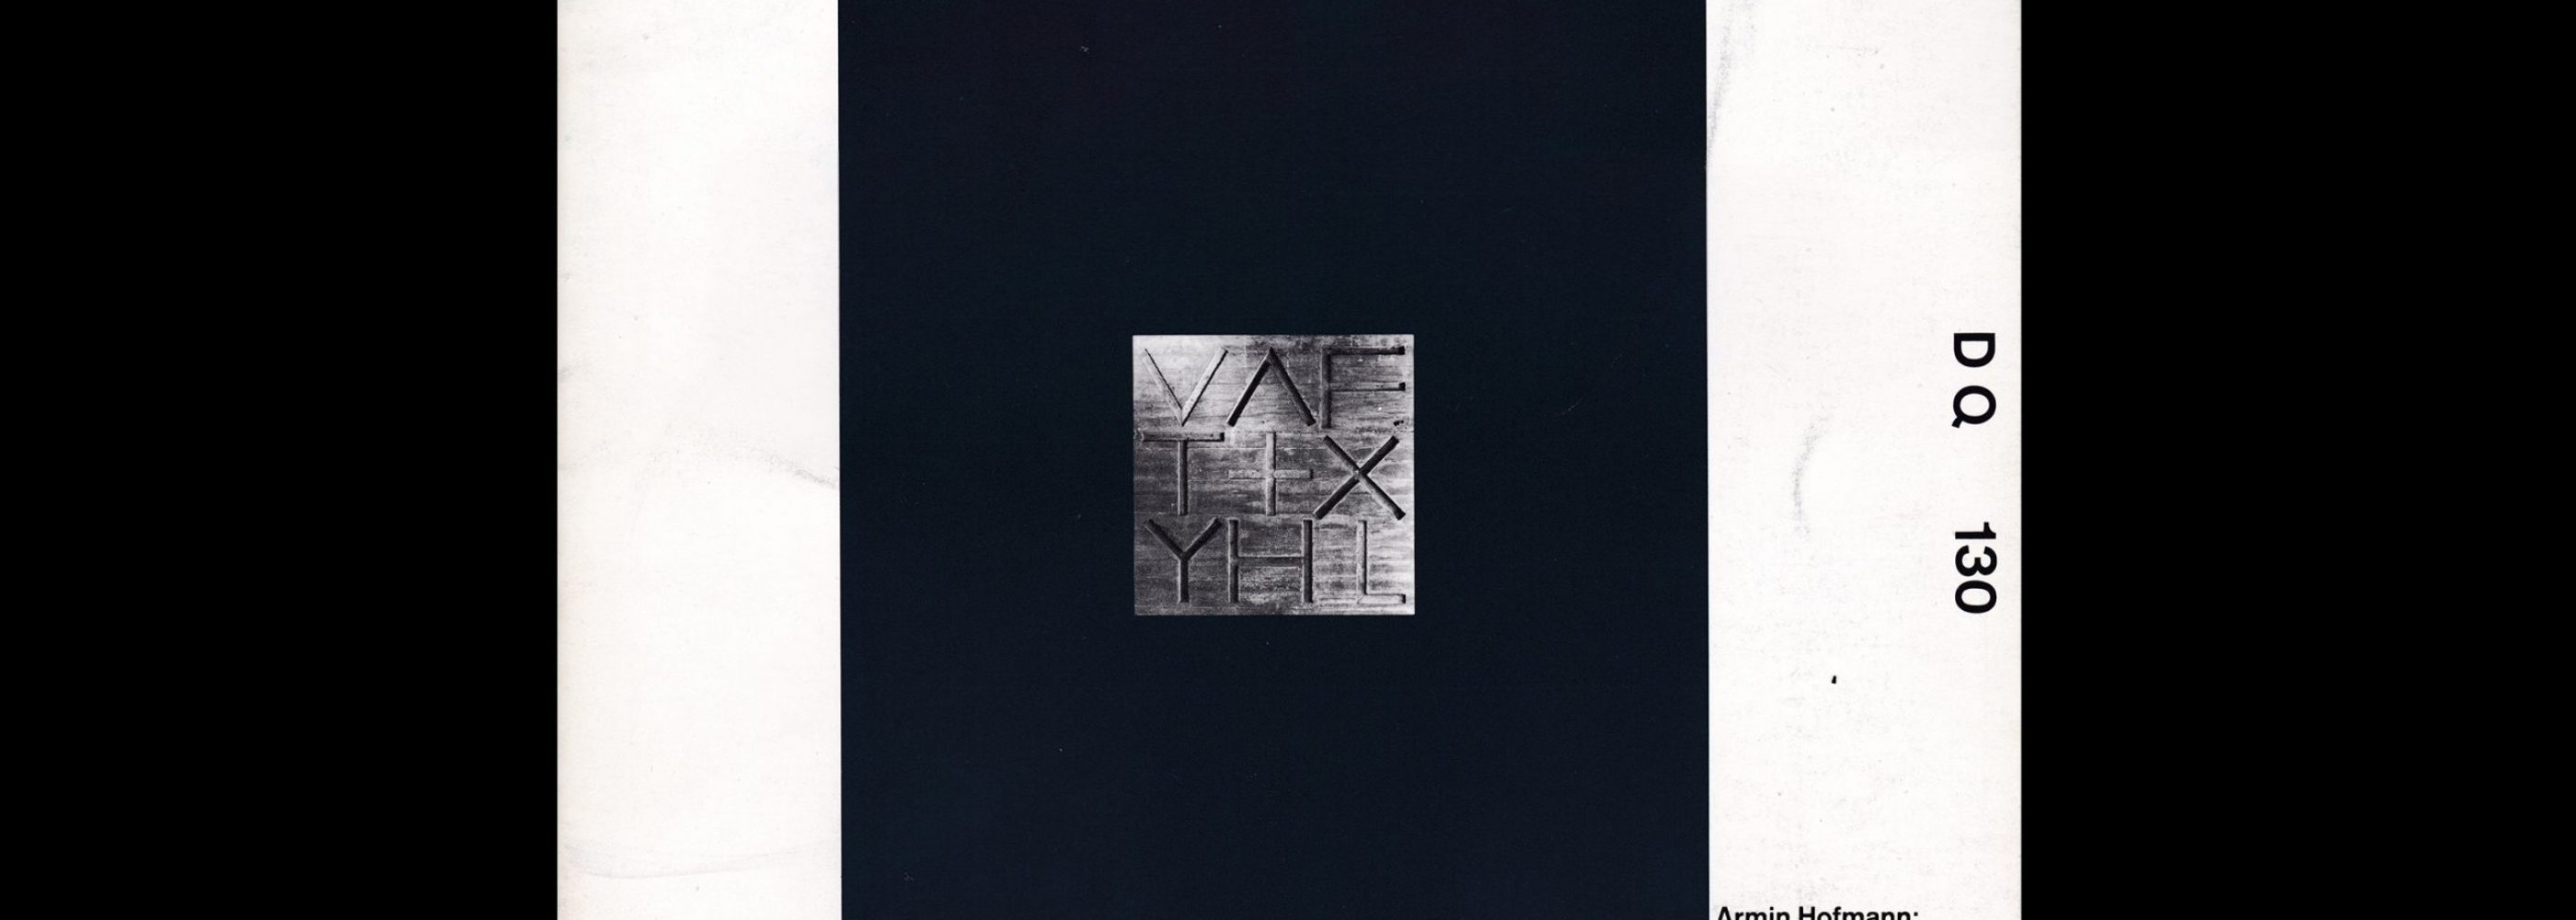 Design Quarterly 130, Armin Hofmann and Wolfgang Weingart, 1985